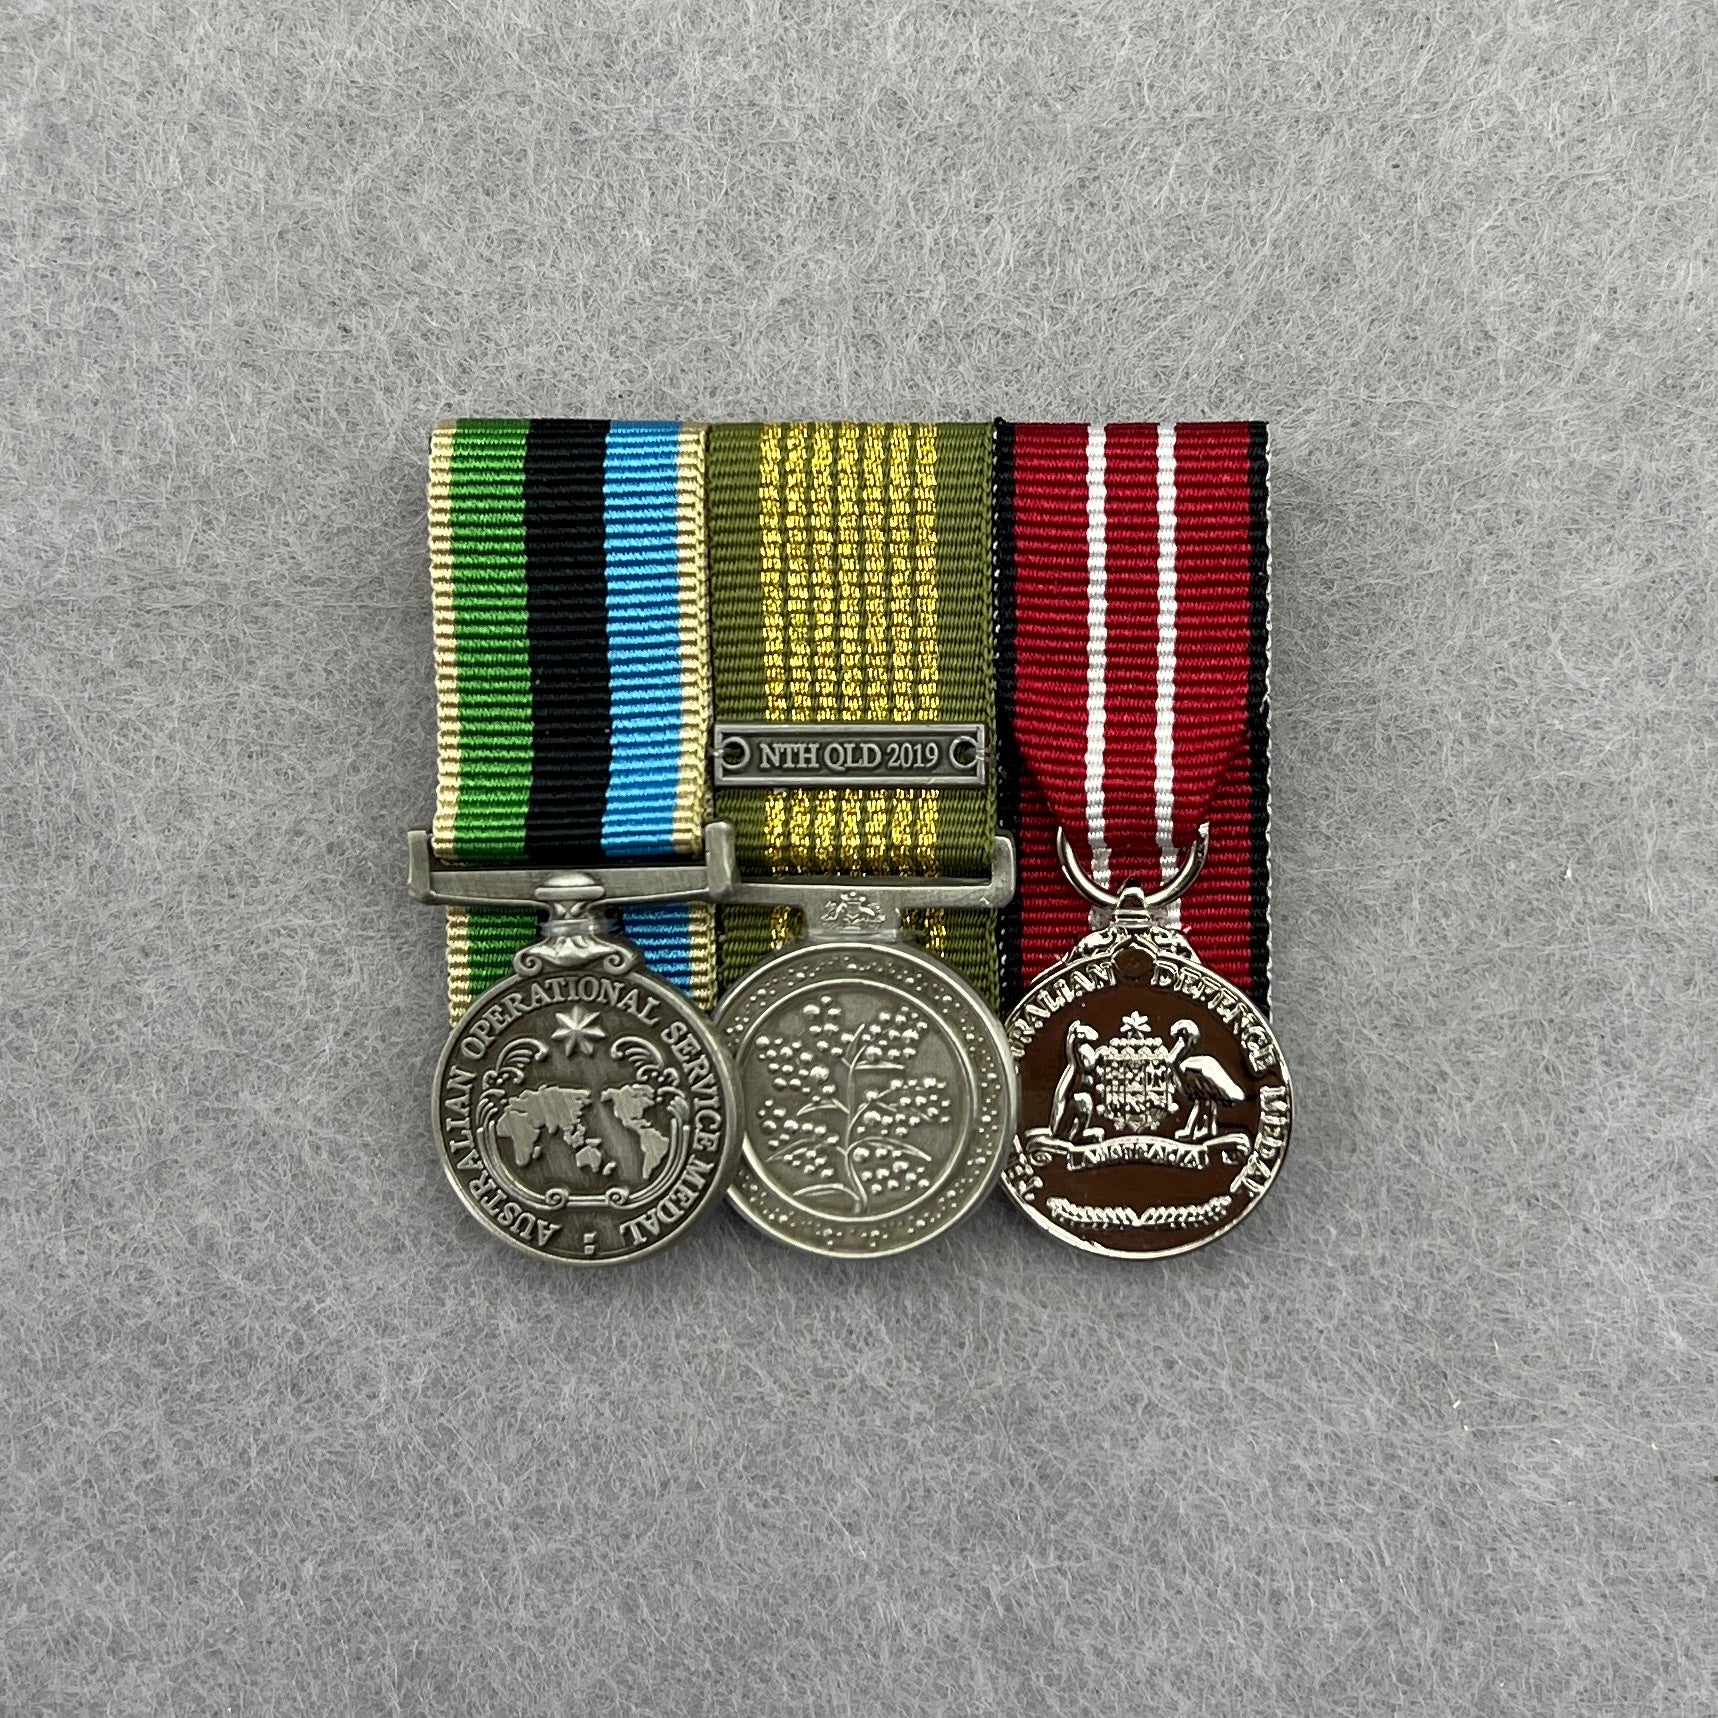 AOSM - GME / NEM / Service Trio - Foxhole Medals